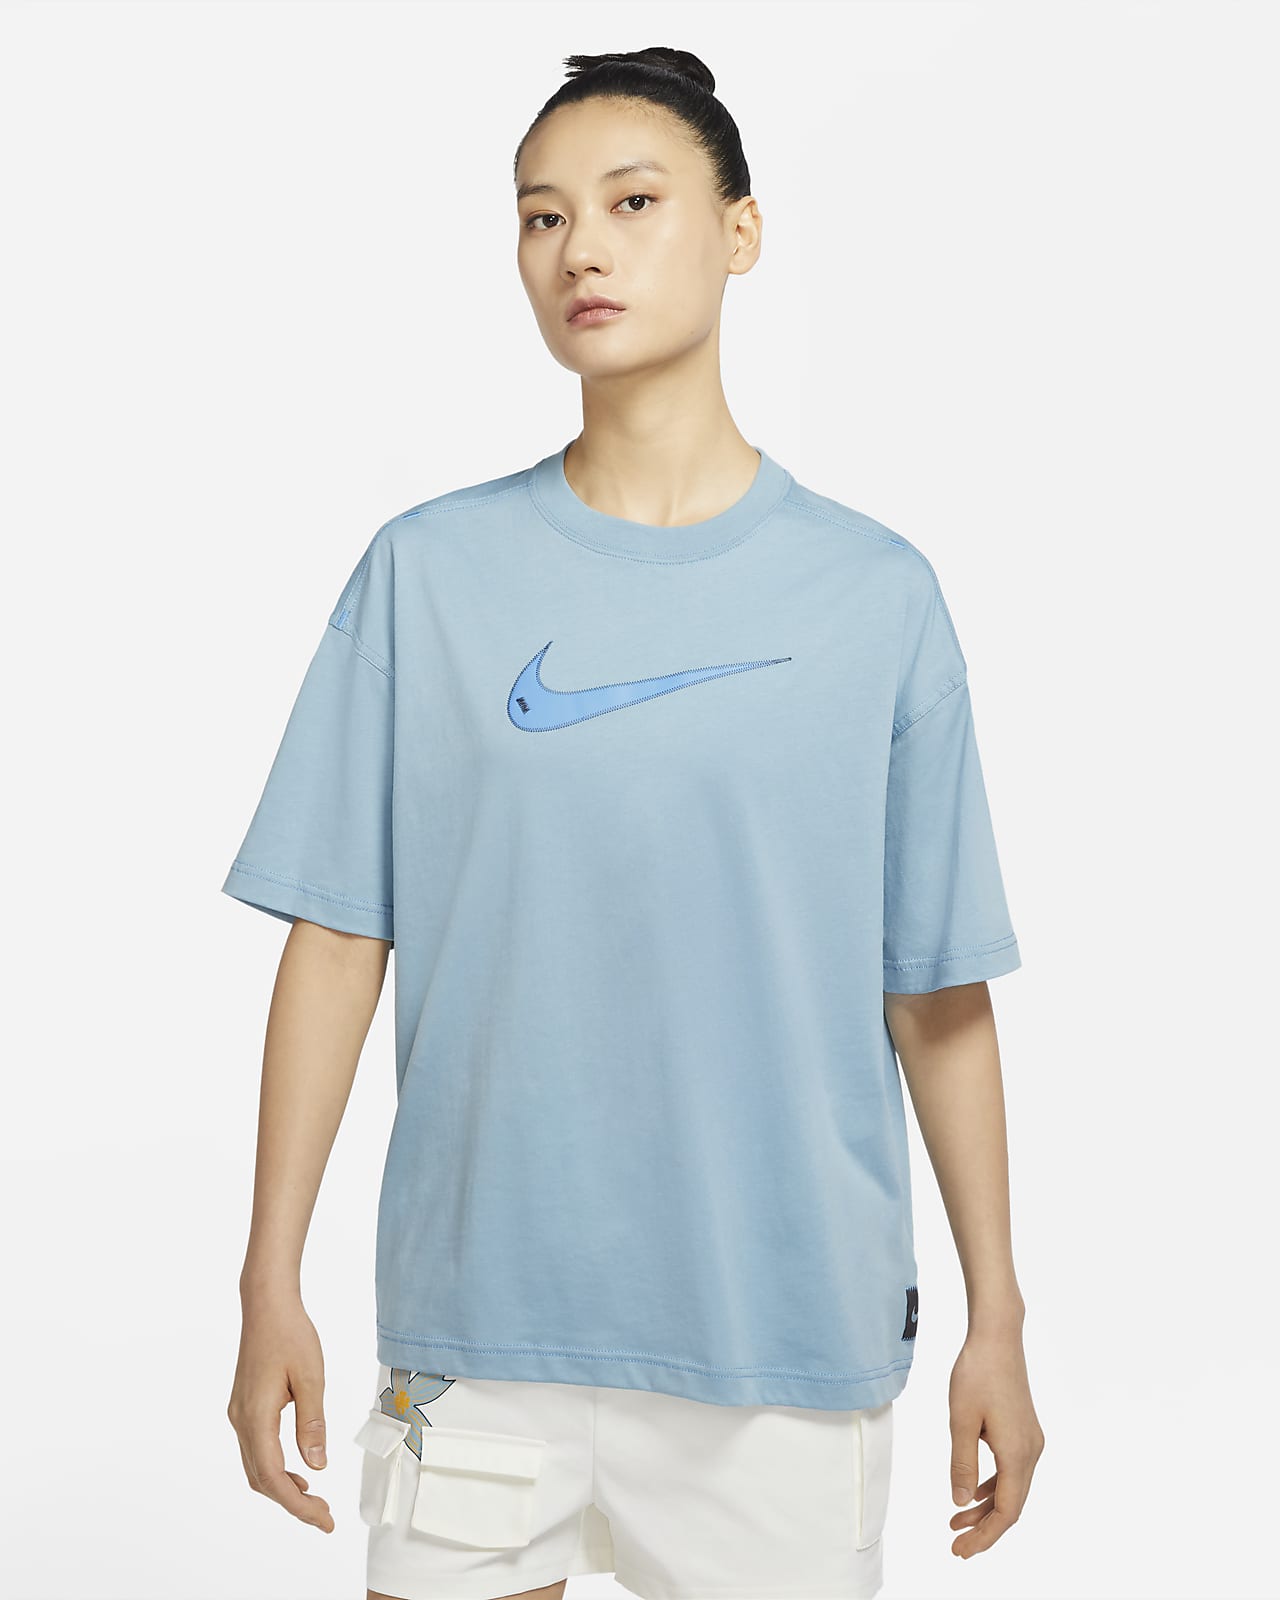 Nike Sportswear Swoosh Women's Short-Sleeve Top